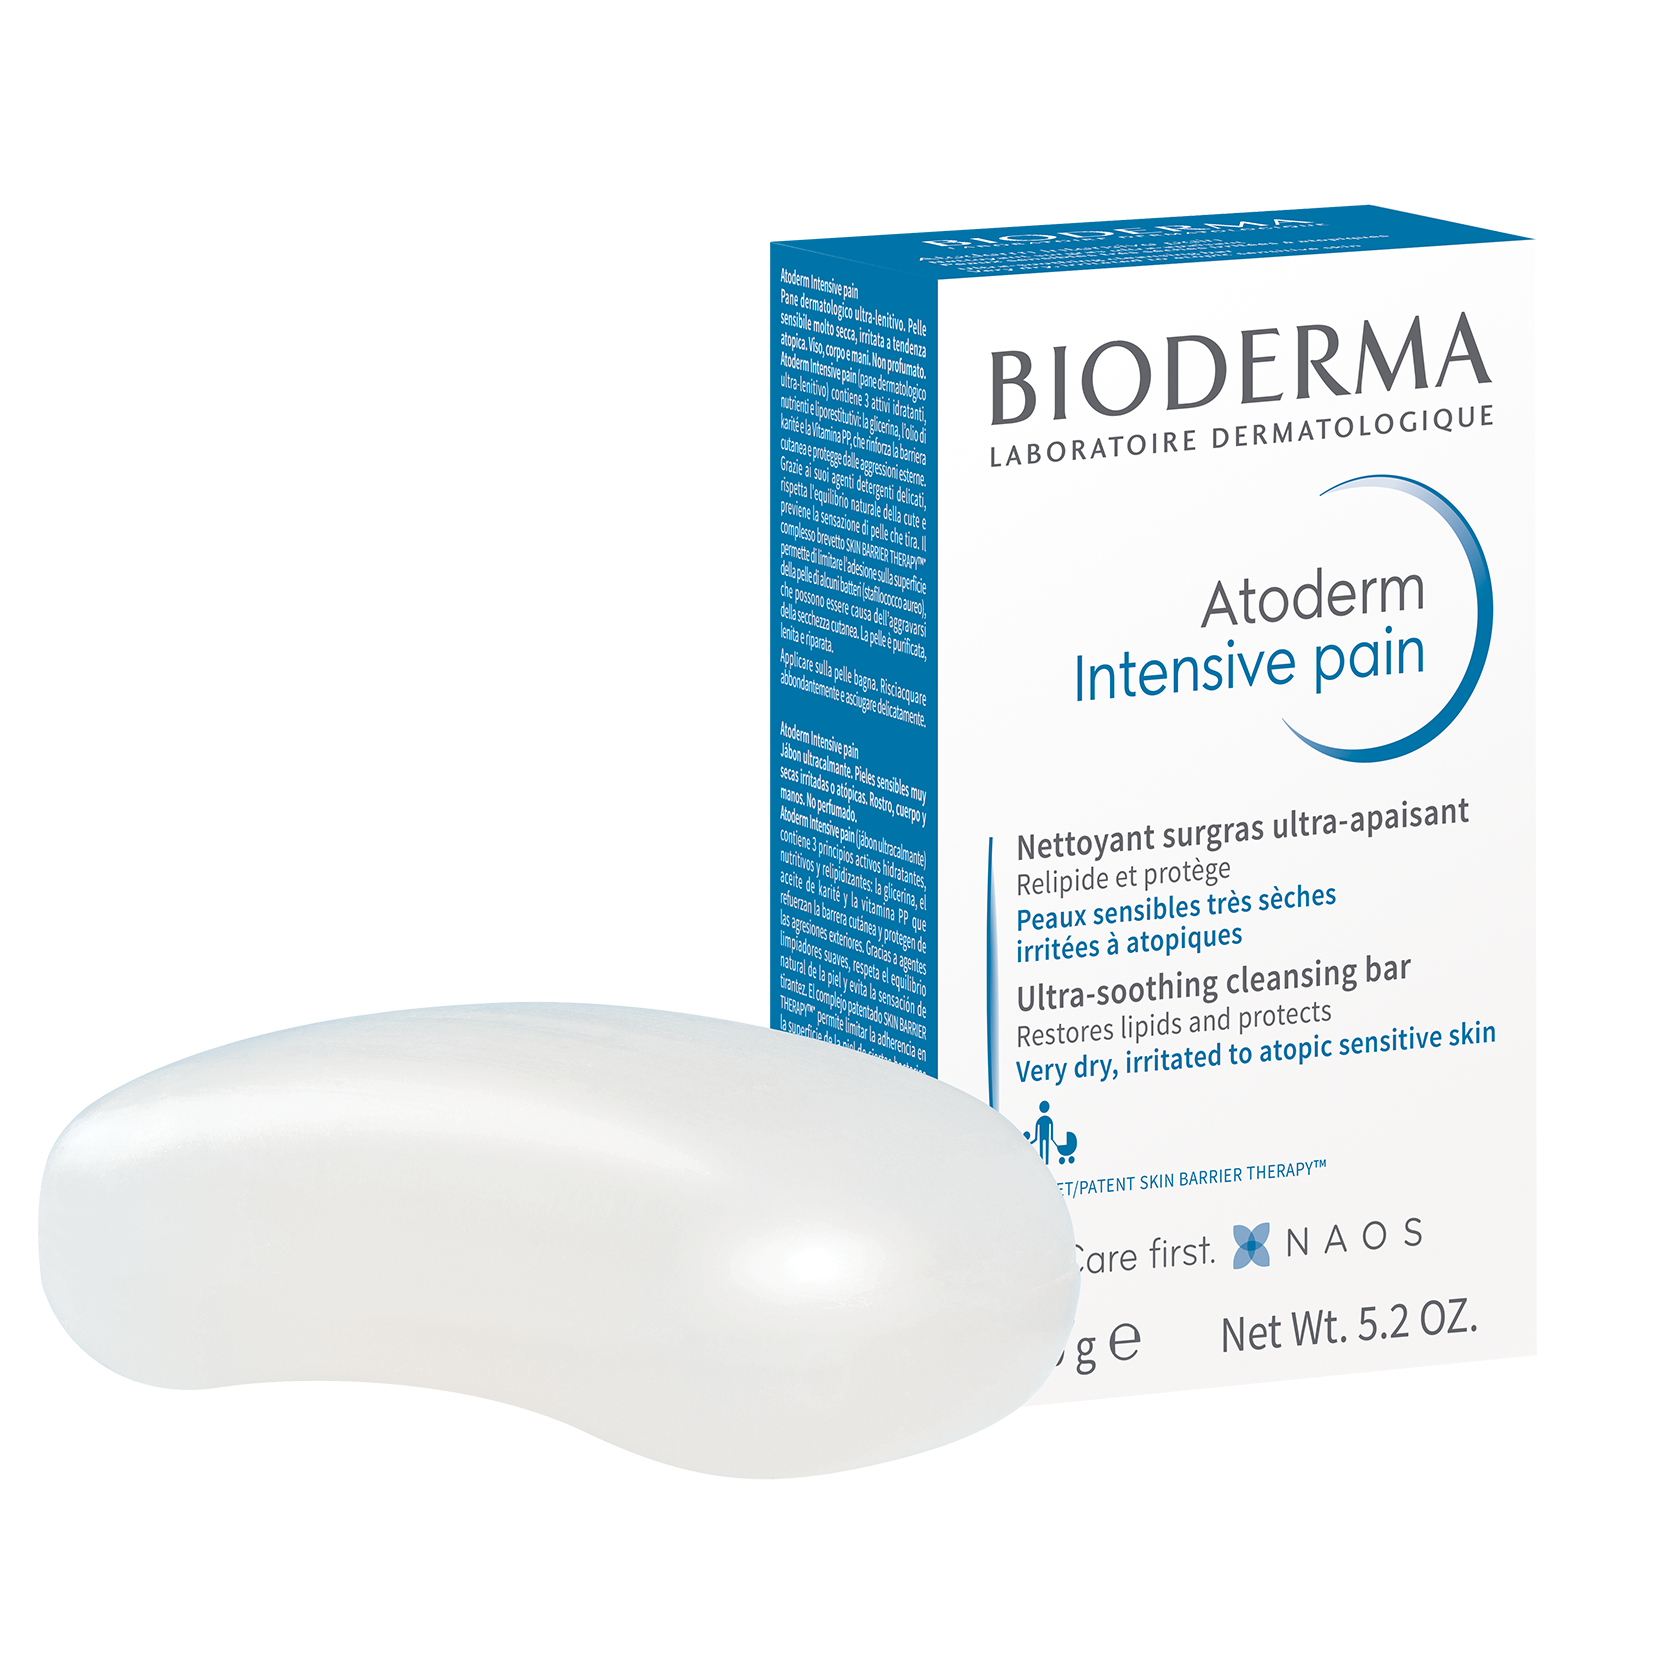 BIODERMA ATODERM  INTENSIVE PAIN 150 GR 1+1 offer